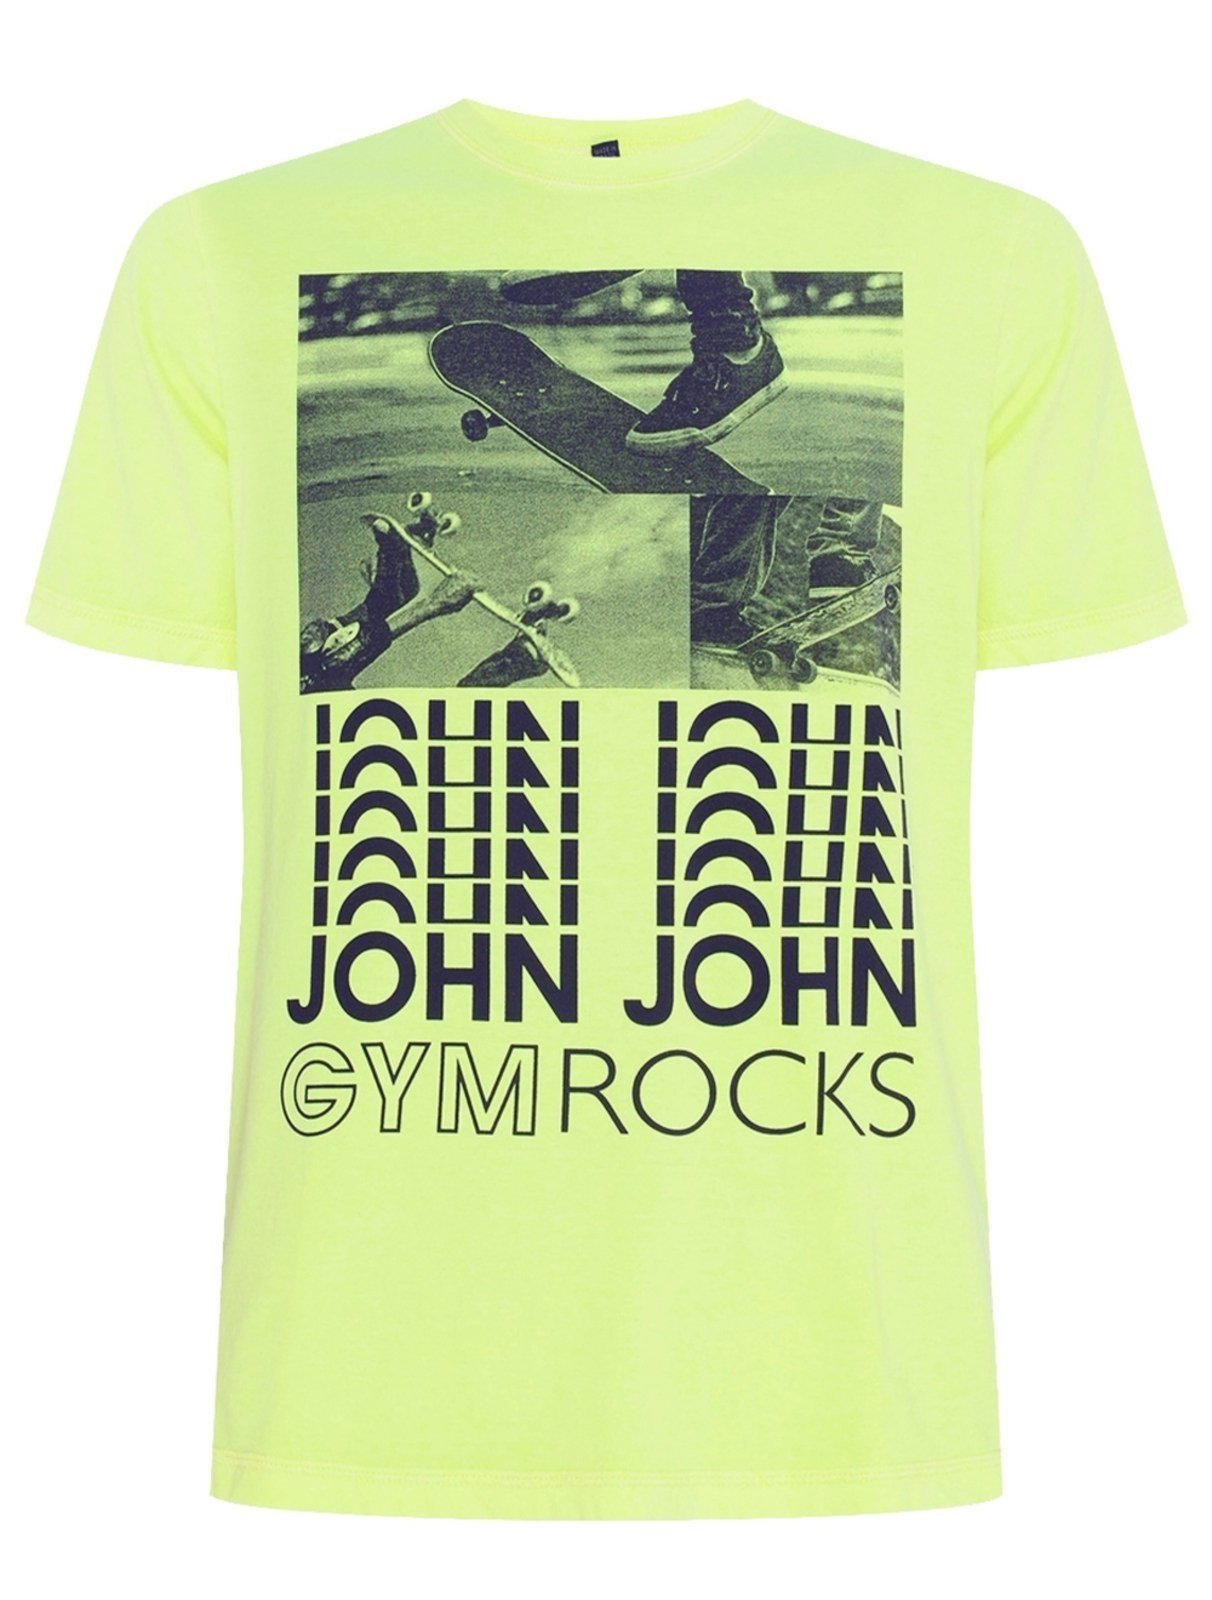 Camiseta John John Rock Tour Amarela - Faz a Boa!